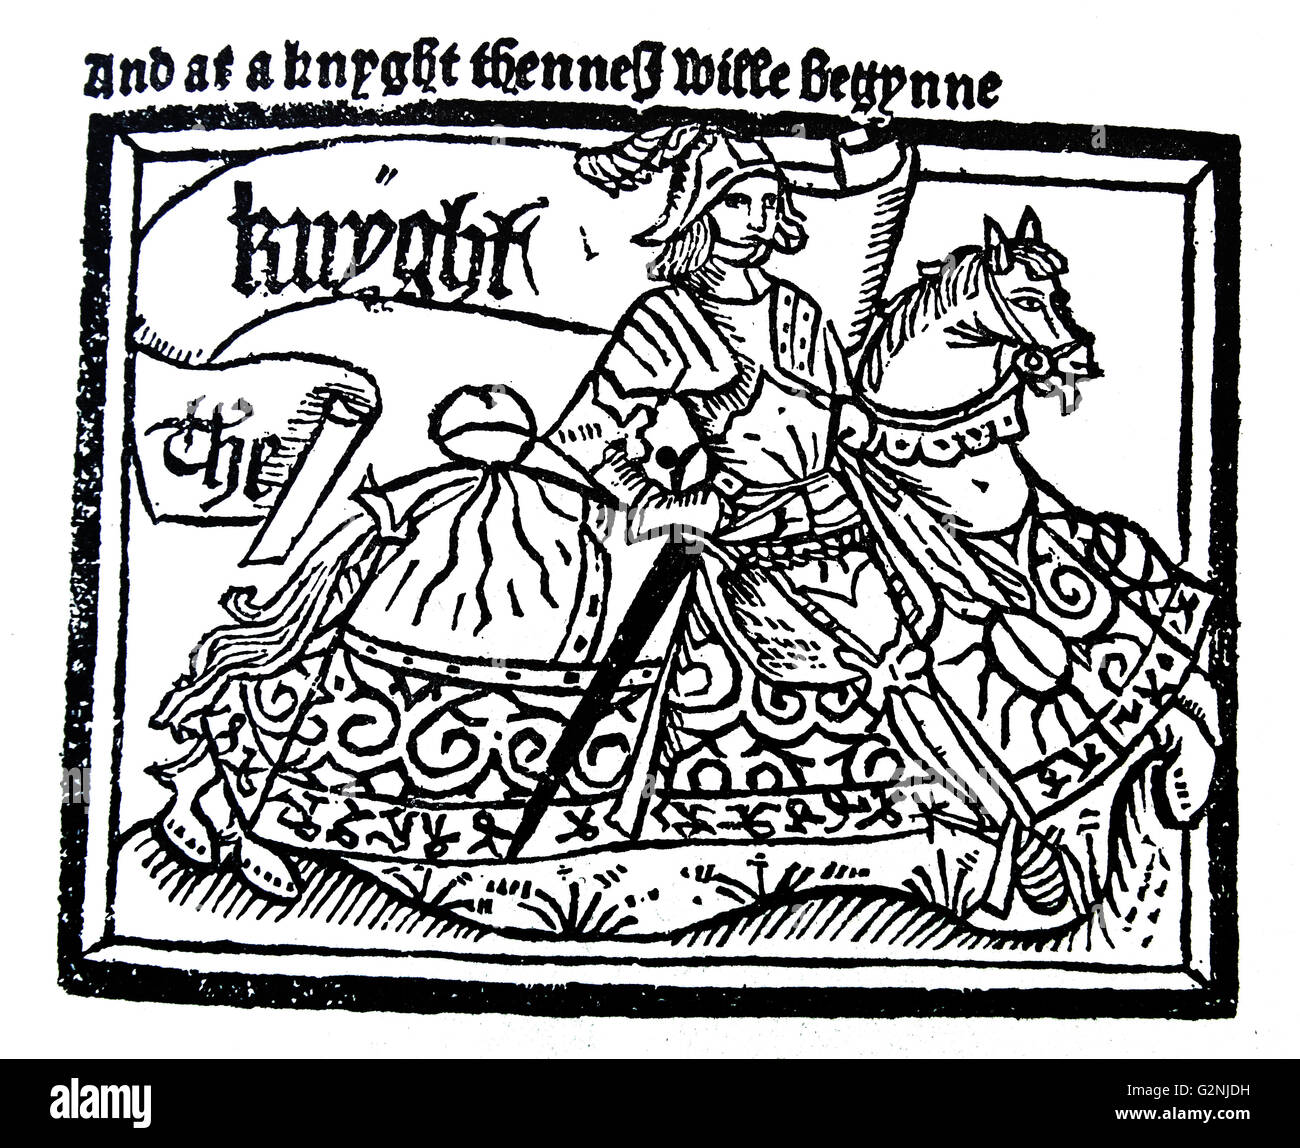 Eine Zeichnung des Chaucer Ritter, aus den Canterbury Tales' Geschichte vom Ritter". Der Ritter aus Leidenschaft, ist das erste Märchen von Geoffrey Chaucer die Canterbury Tales. Die Geschichte führt verschiedene typische Aspekte der Orden wie die höfische Liebe und ethische Dilemmata. Vom 14. Jahrhundert Stockfoto